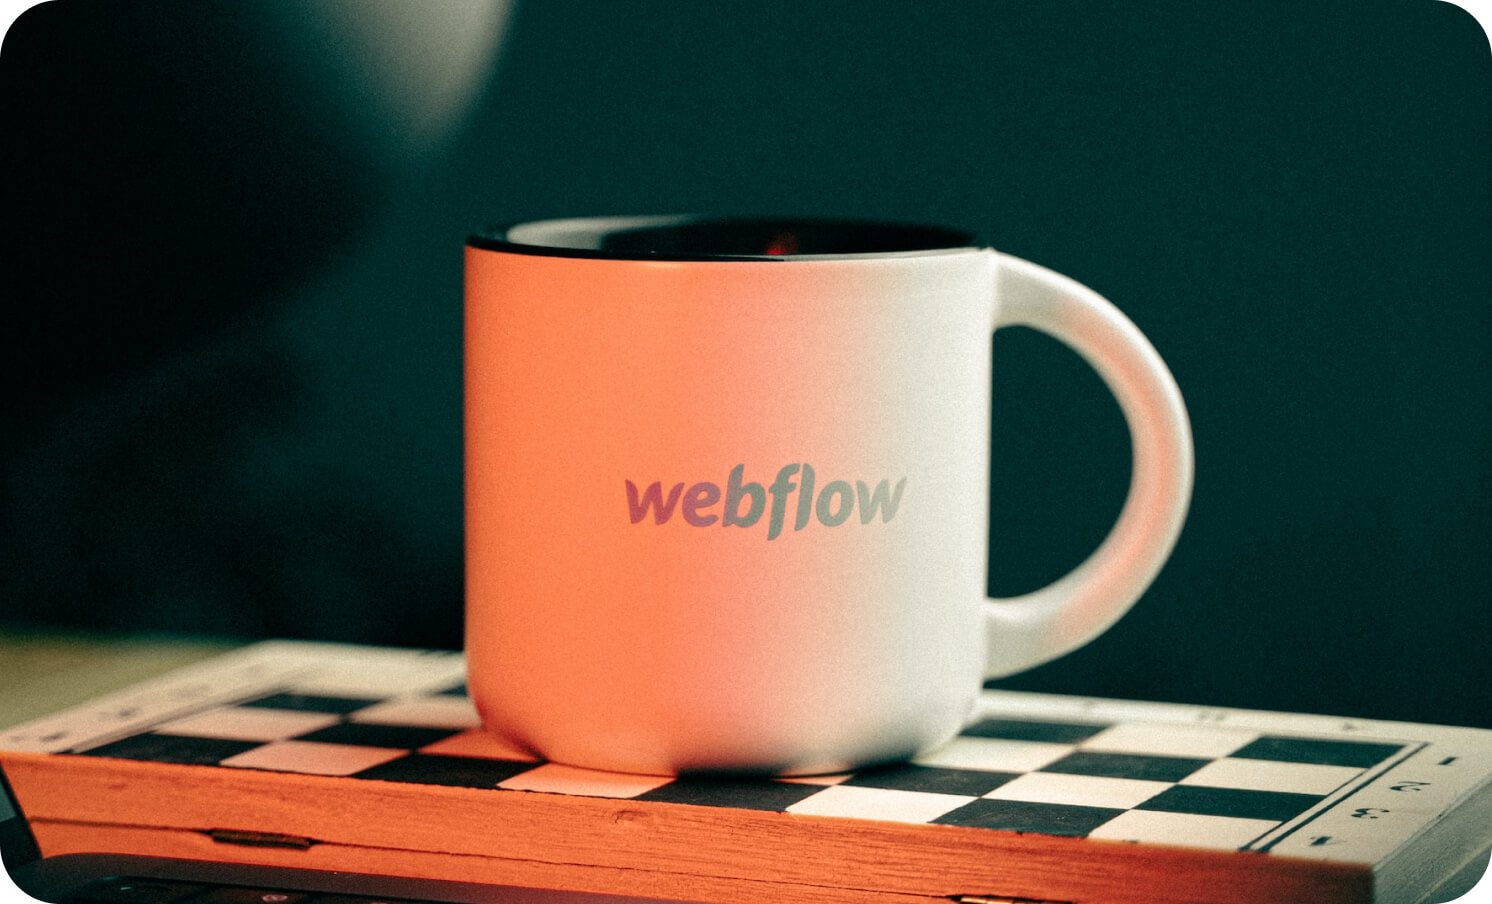 노코드 플랫폼 웹플로우(webflow)를 상징하는 컵 이미지